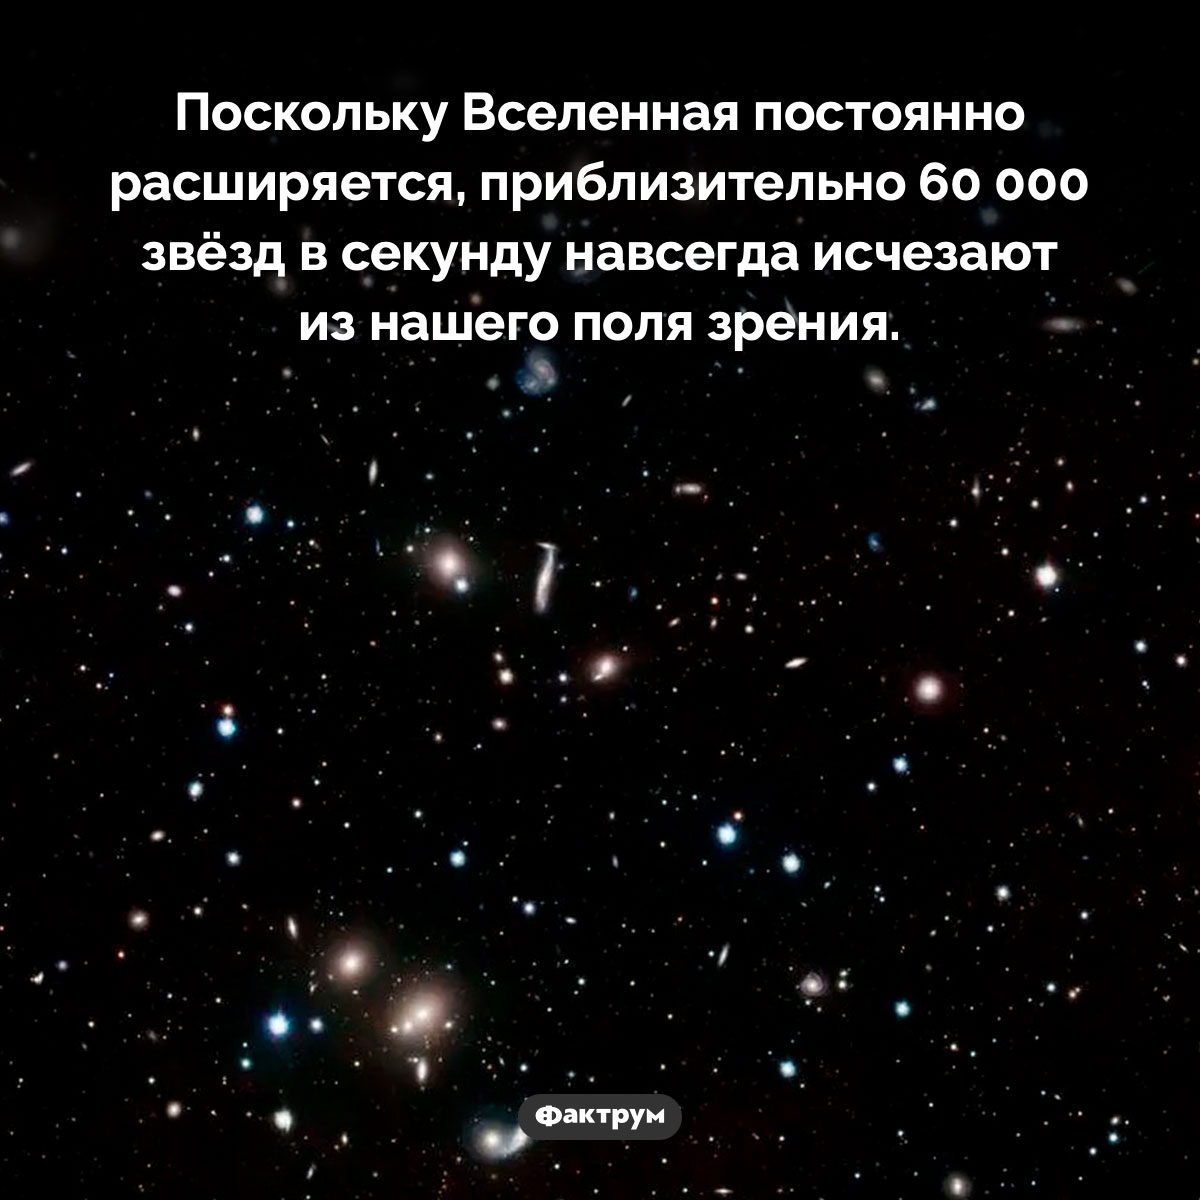 Мы теряем из поля зрения по 60 000 звёзд в секунду. Поскольку Вселенная постоянно расширяется, приблизительно 60 000 звёзд в секунду навсегда исчезают из нашего поля зрения.